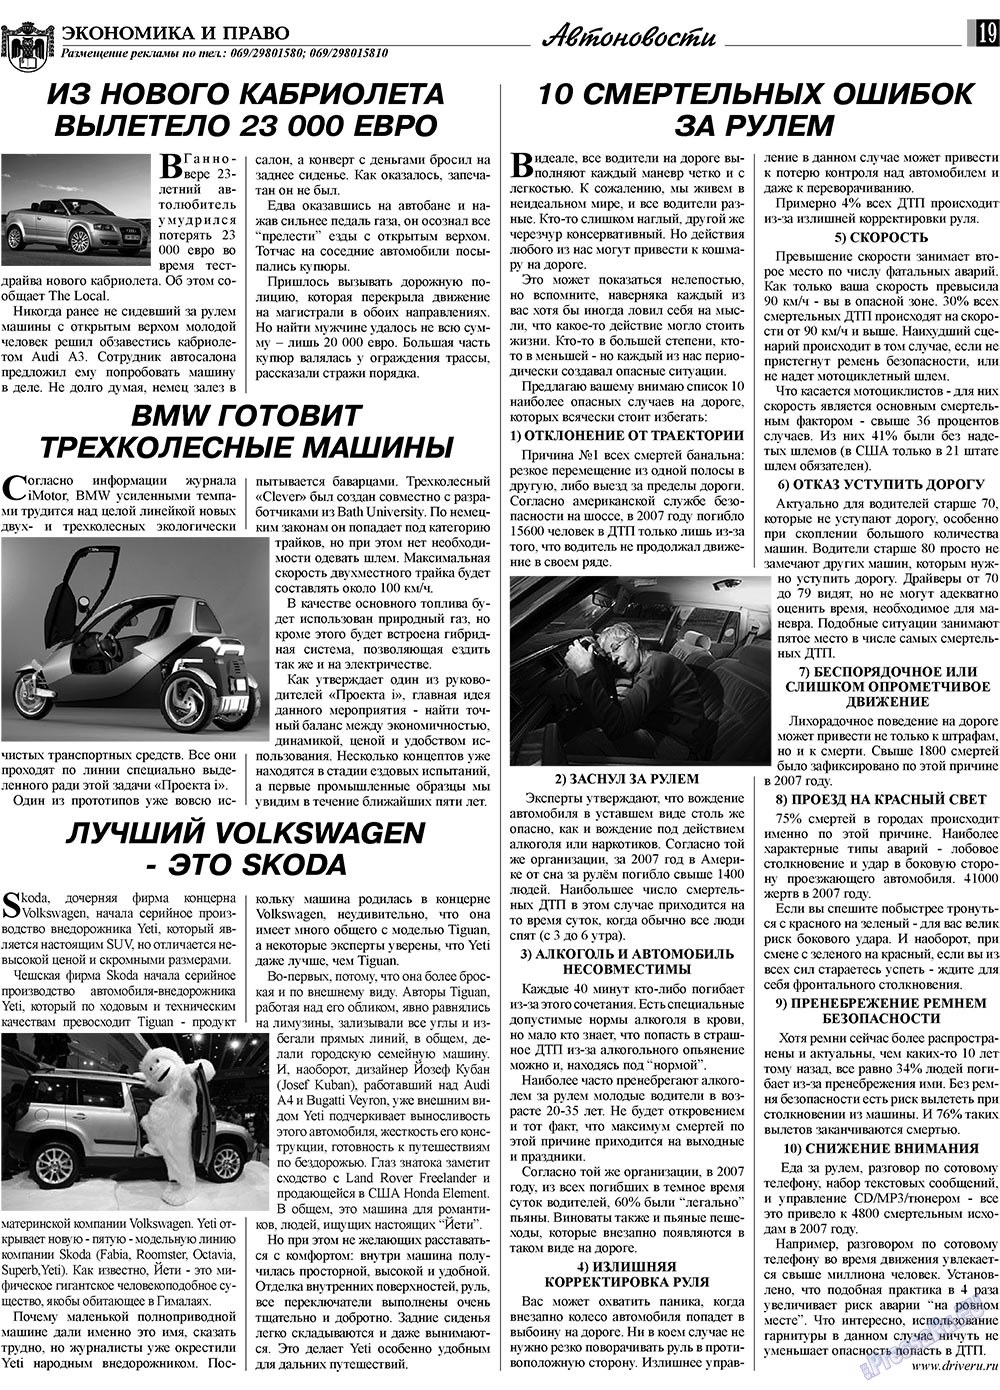 Экономика и право, газета. 2009 №6 стр.19